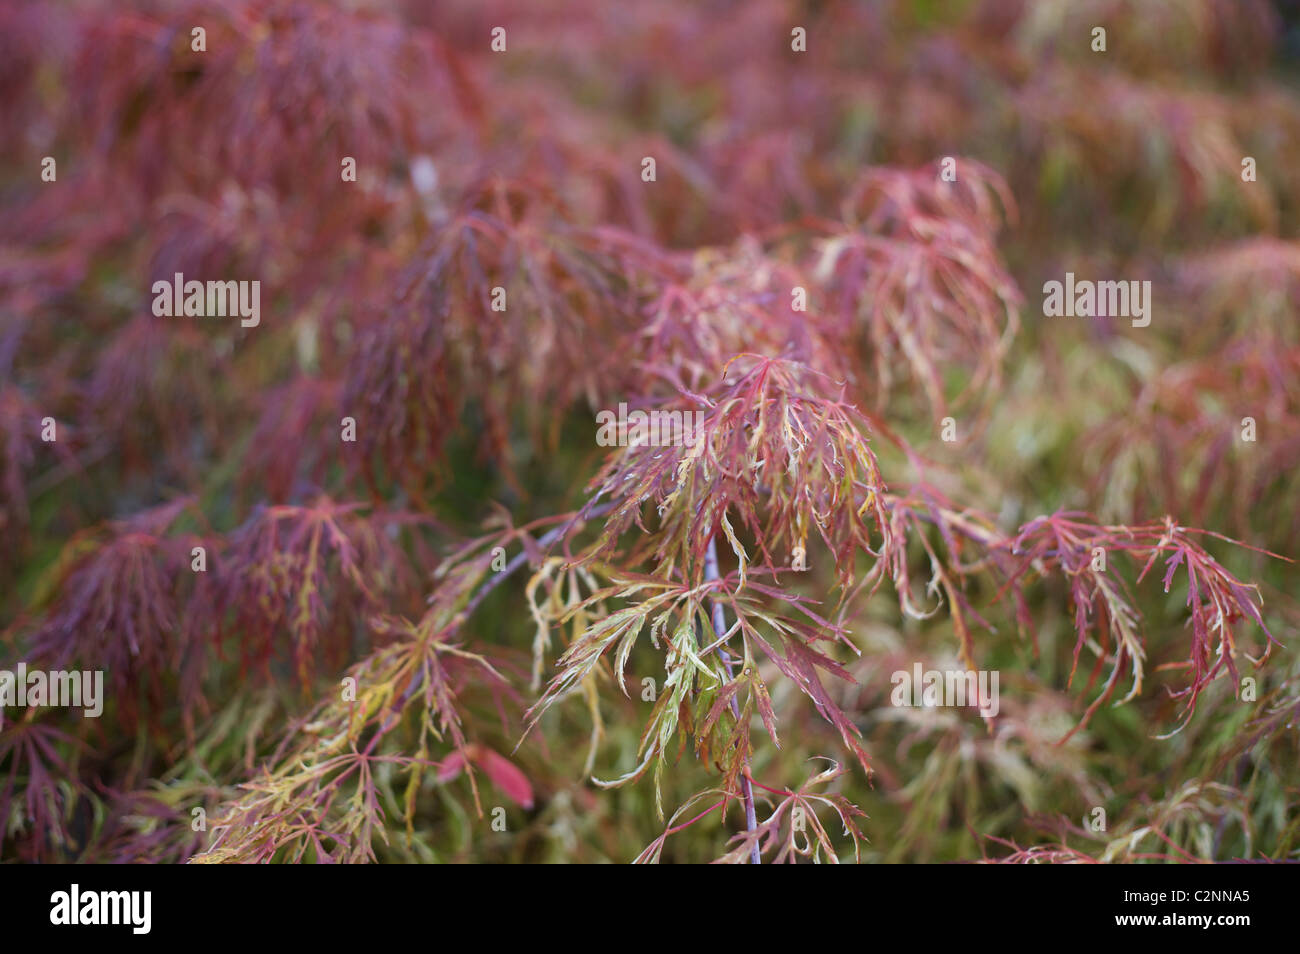 Acer palmatum dissectum 'Ornatum Variegatum' leaves Stock Photo